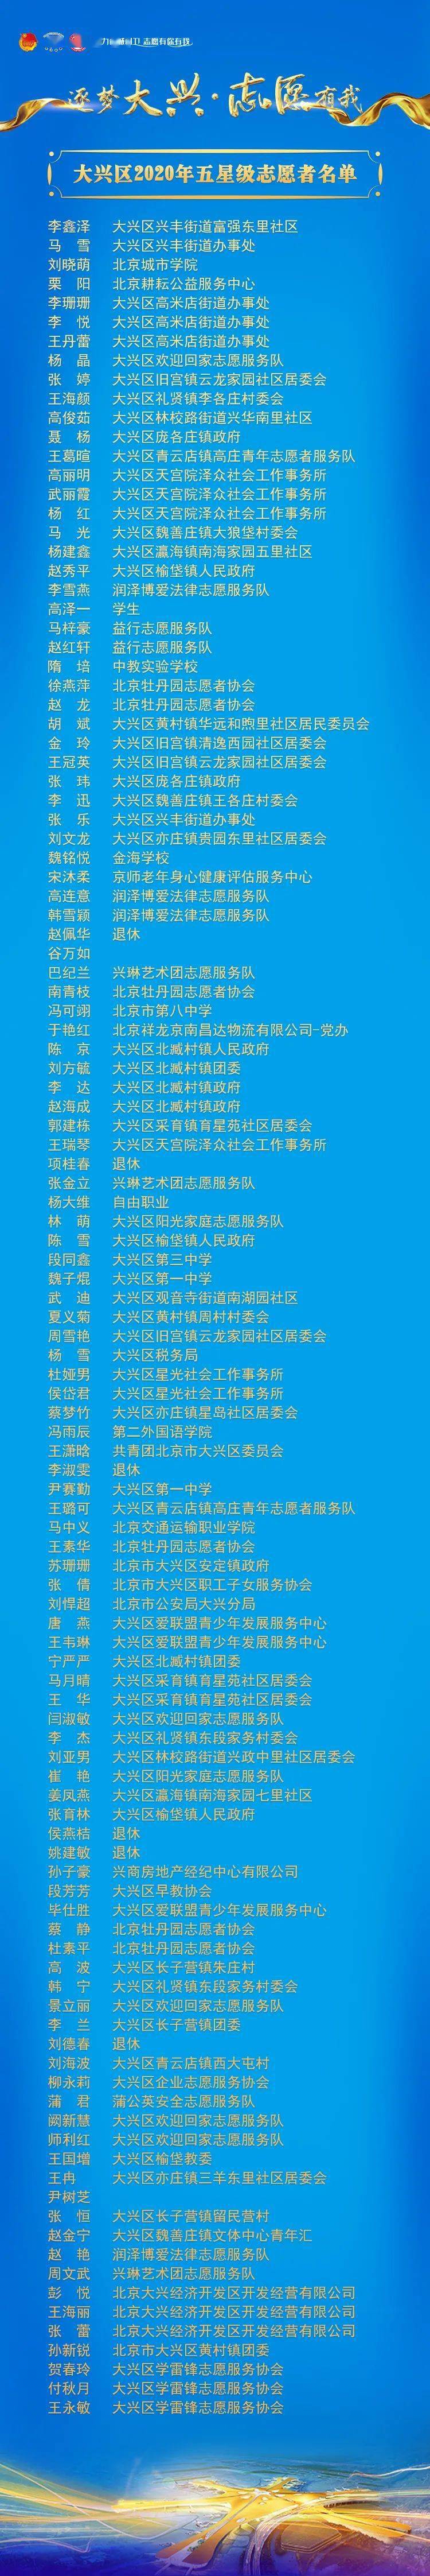 五星从者排名2020_青杭州电子科技大学2020年11月14日至12月3日五星级志愿